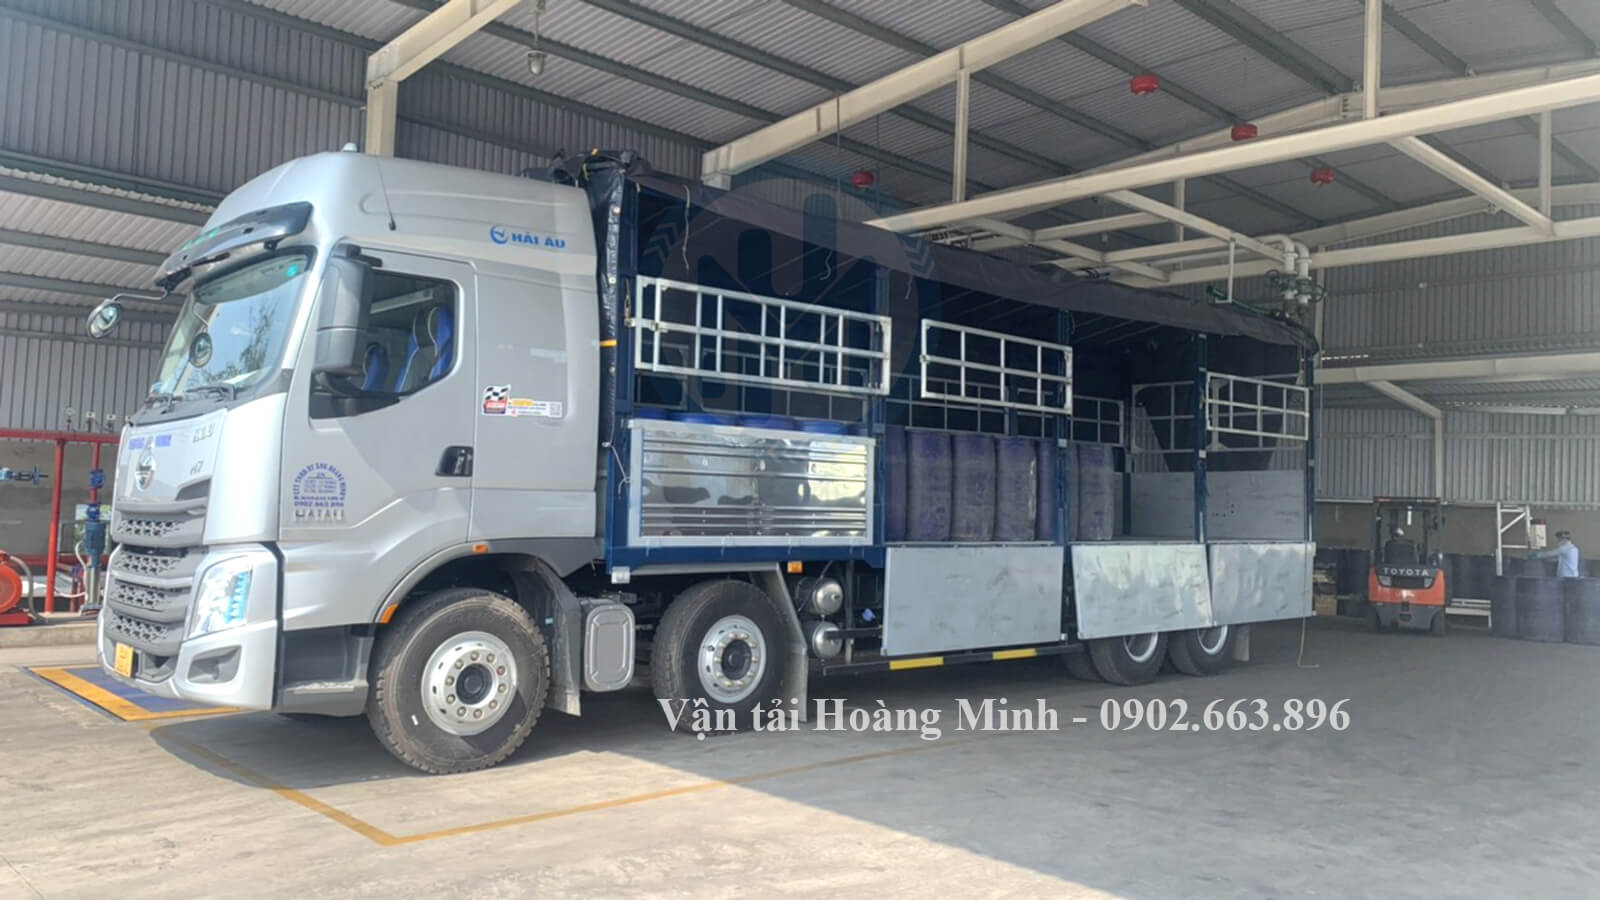 Thông tin về loại xe tải chở hàng 18 tấn ở Vận tải Hoàng Minh